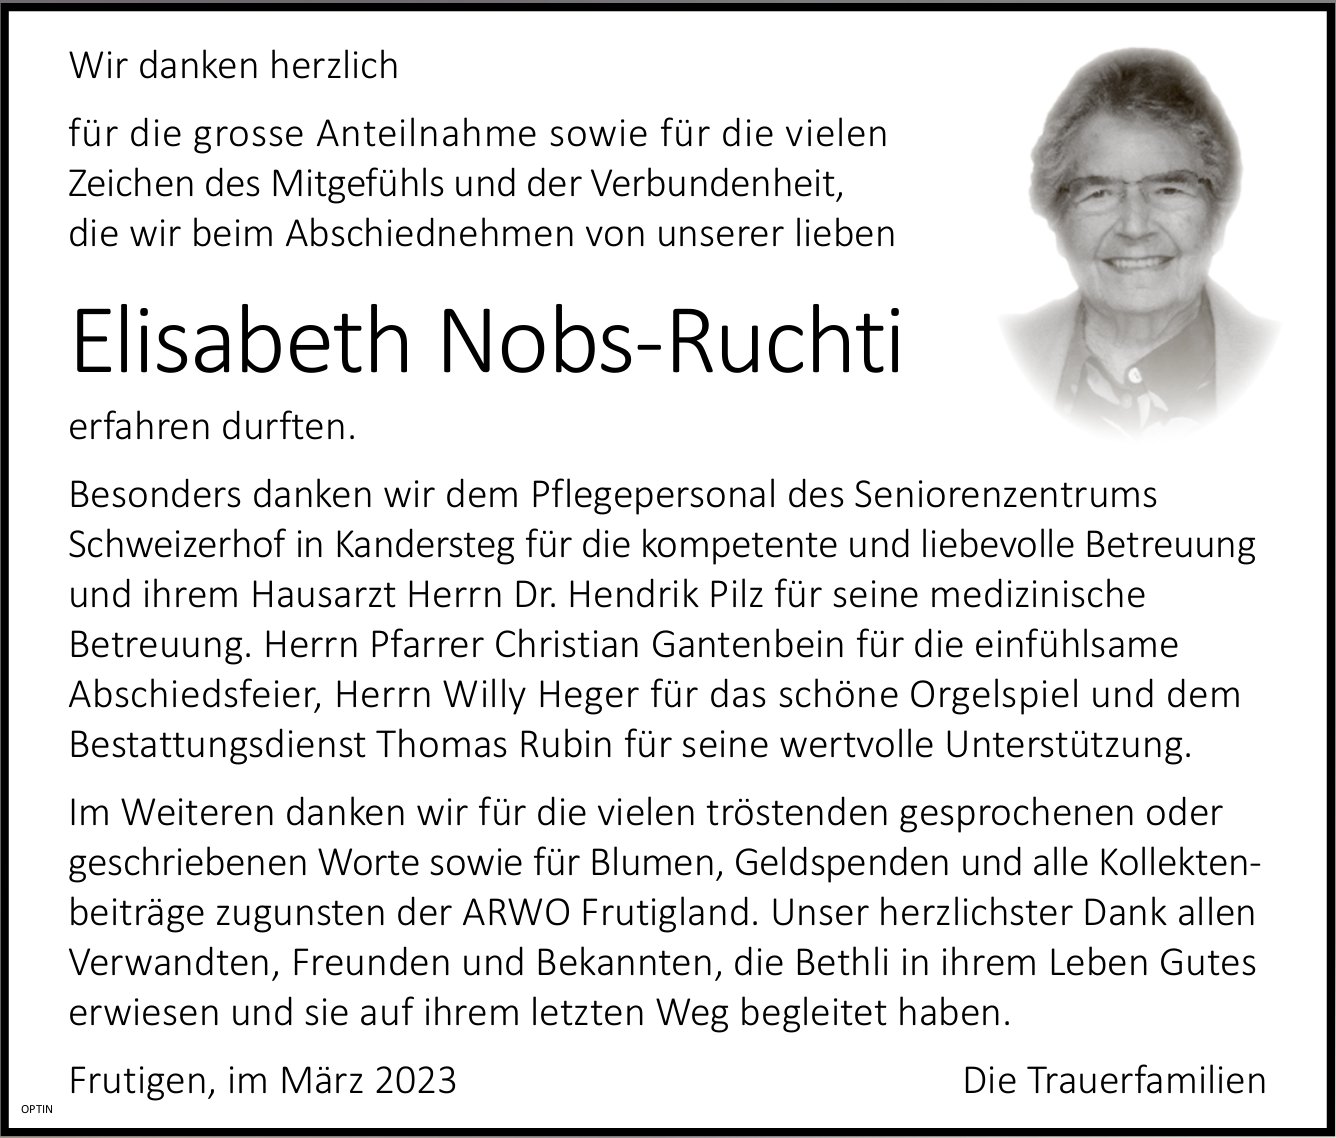 Elisabeth Nobs-Ruchti, im März 2023 / DS